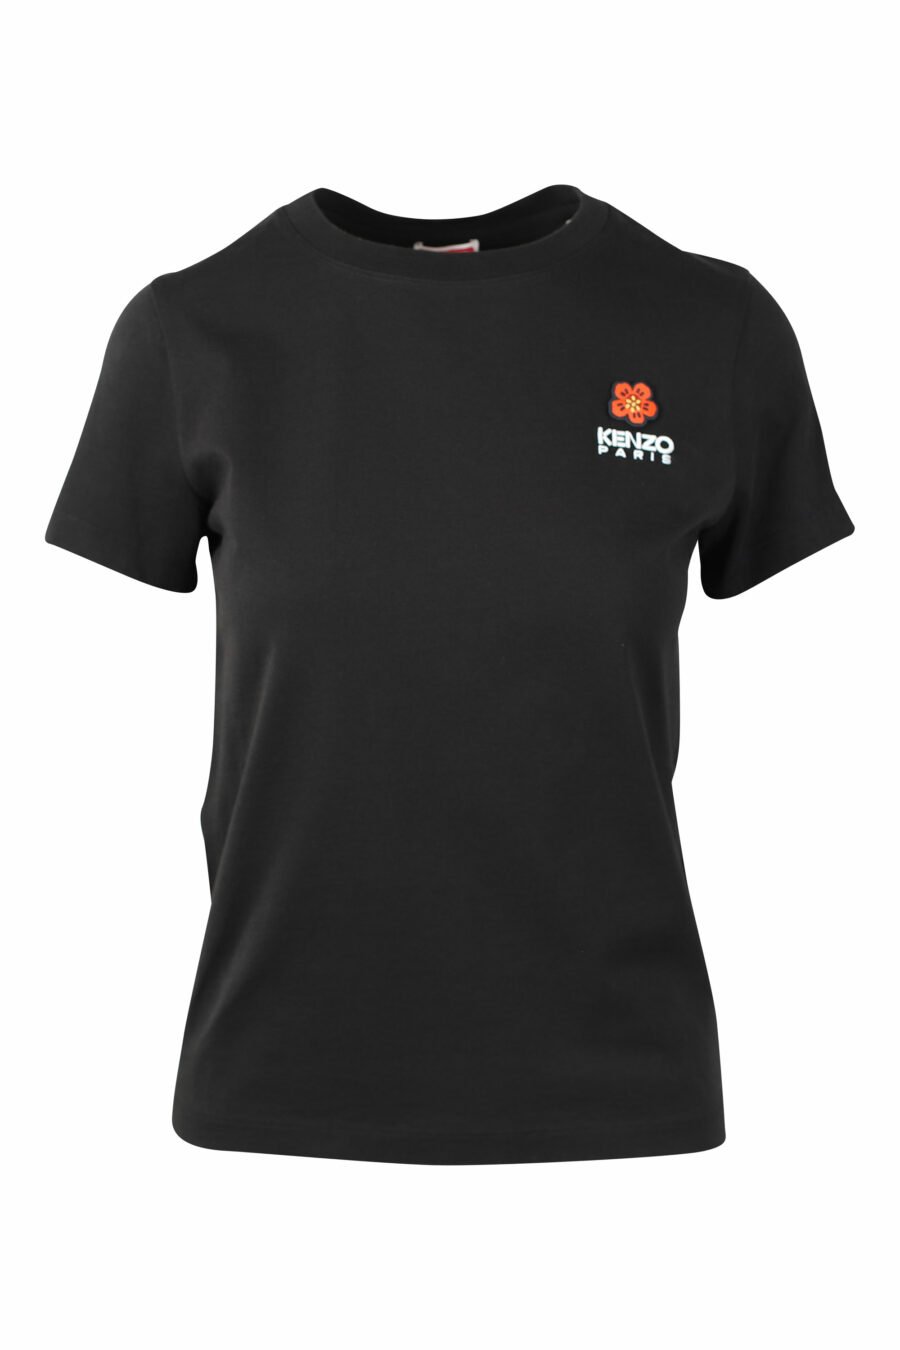 Schwarzes T-Shirt mit rotem Minilogo - IMG 1514